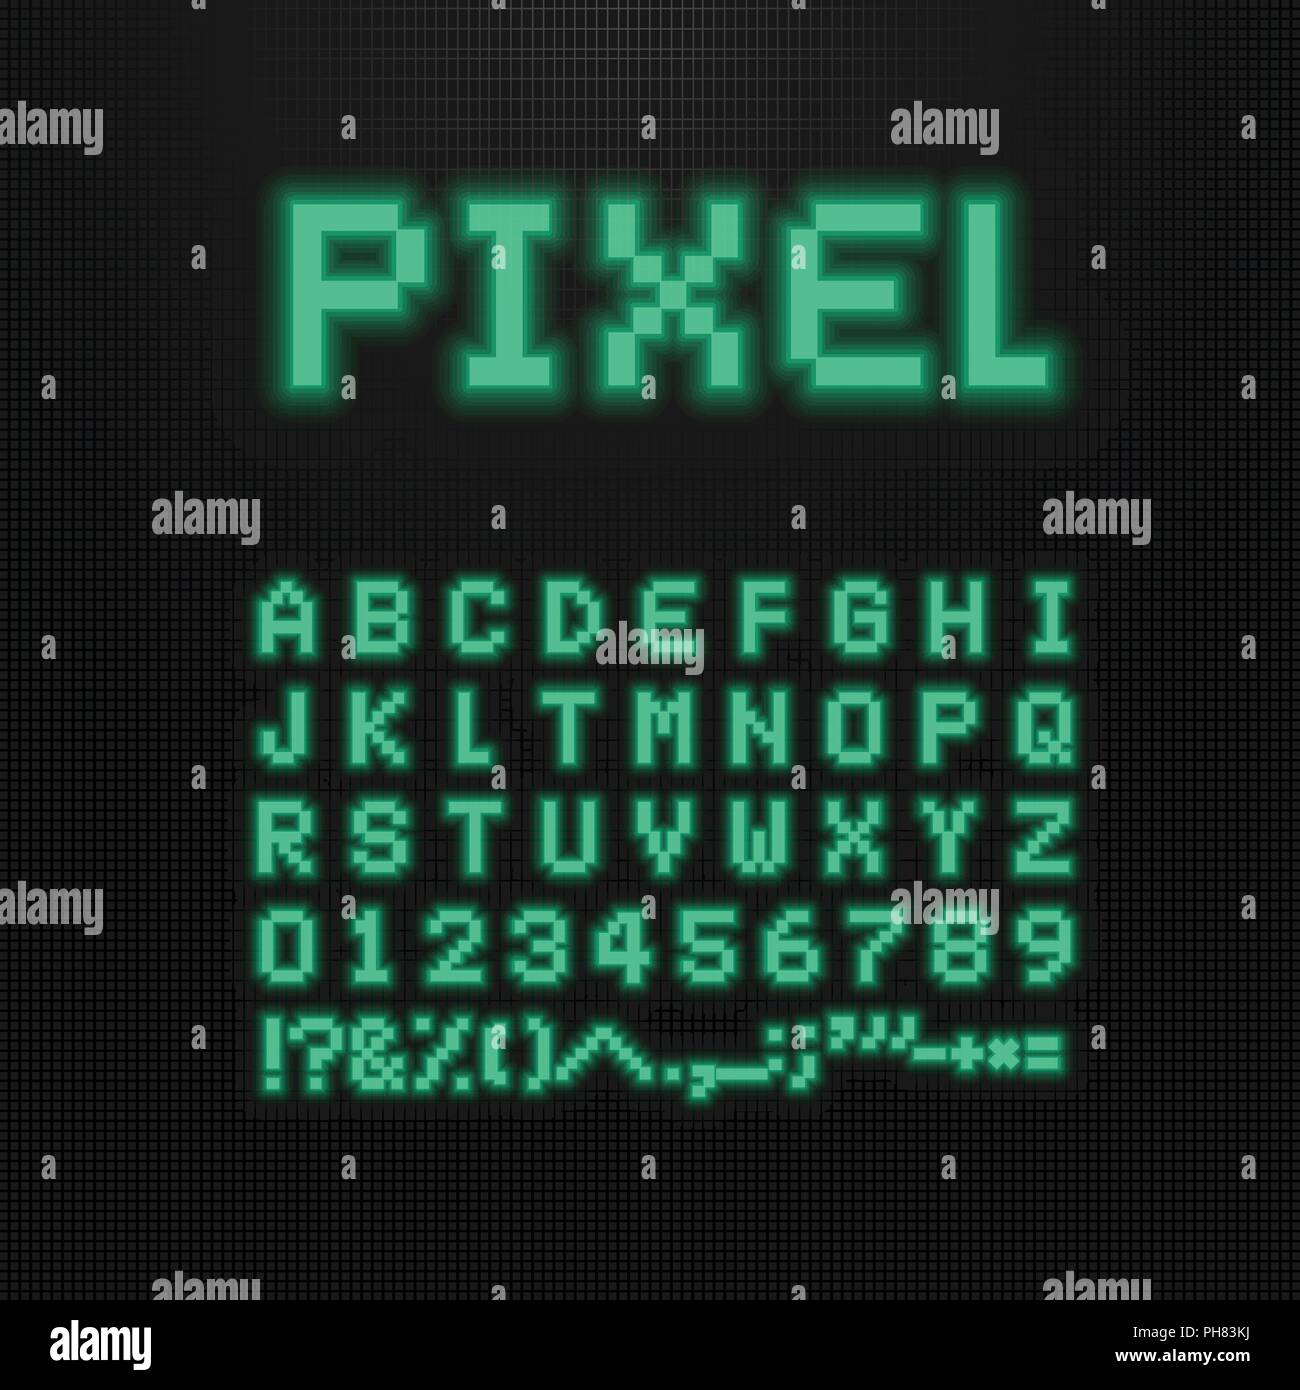 Pixel font, Vektor Buchstaben, Zahlen und Zeichen auf dem alten Computer.  LED-Anzeige. 8-bit video game Schriftbild. Retro digital abc. Grüne Punkte  Buchstaben auf schwarzem Hintergrund Stock-Vektorgrafik - Alamy